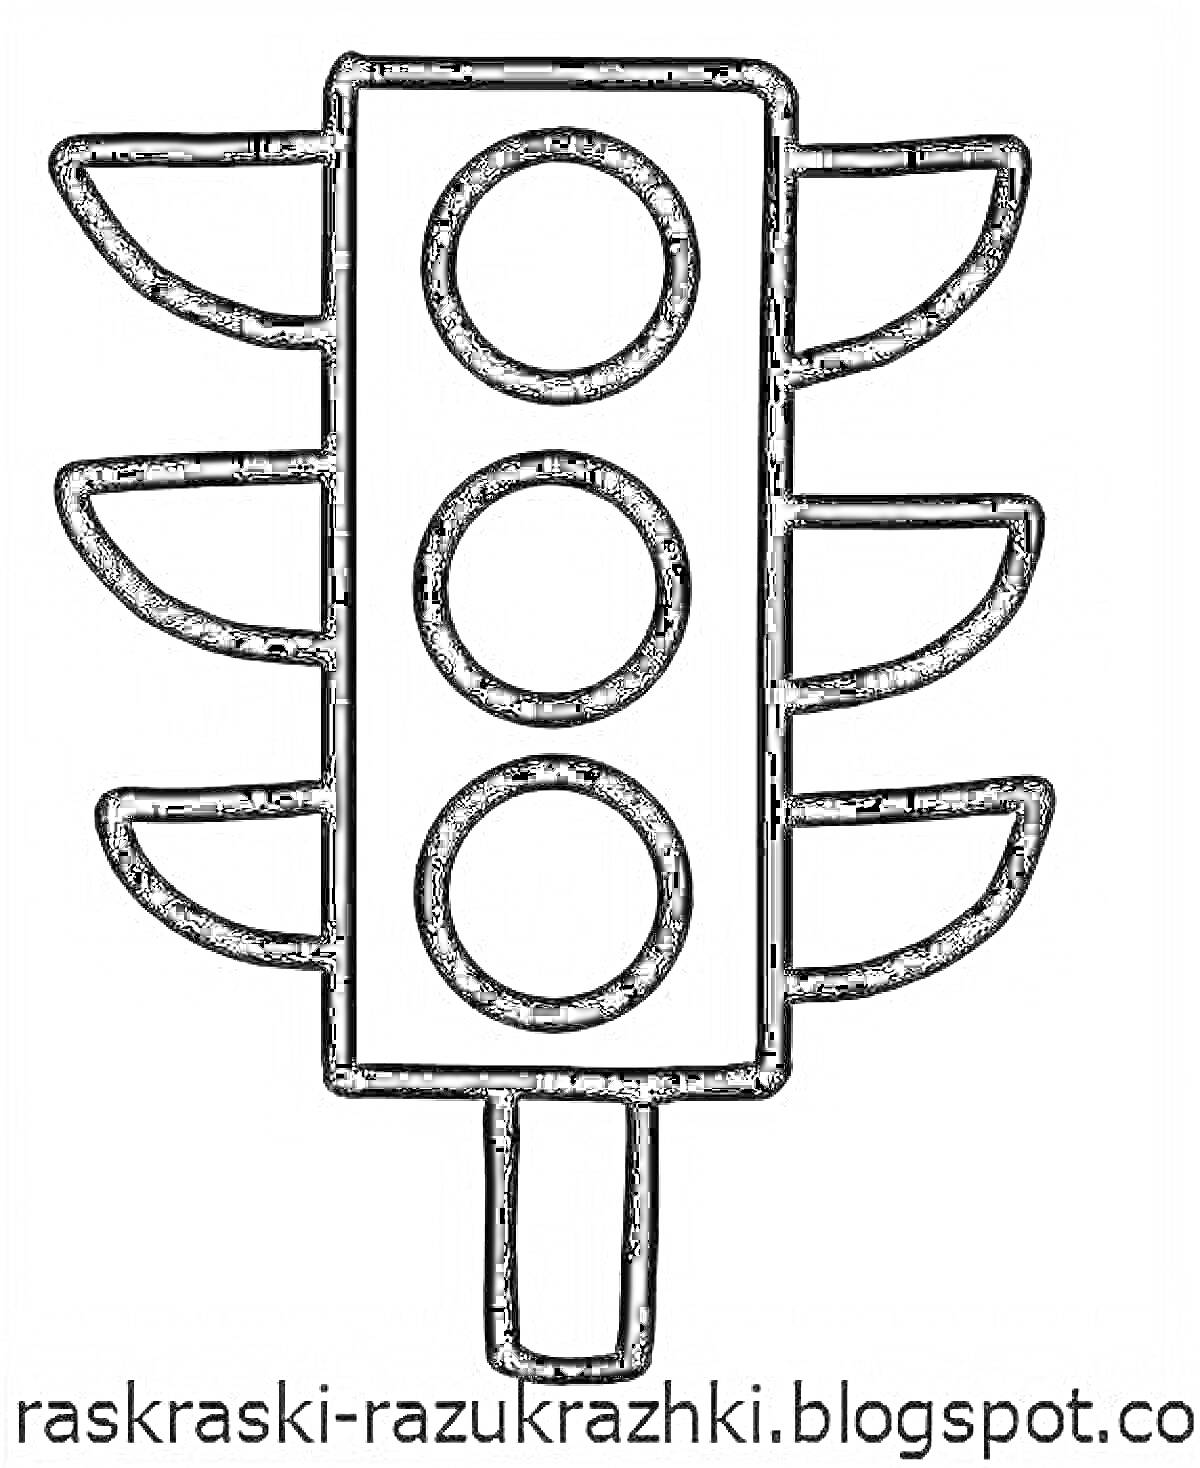 Раскраска Раскраска светофор с тремя кругами и пятью удлиненными полосками - для детей 2-3 лет